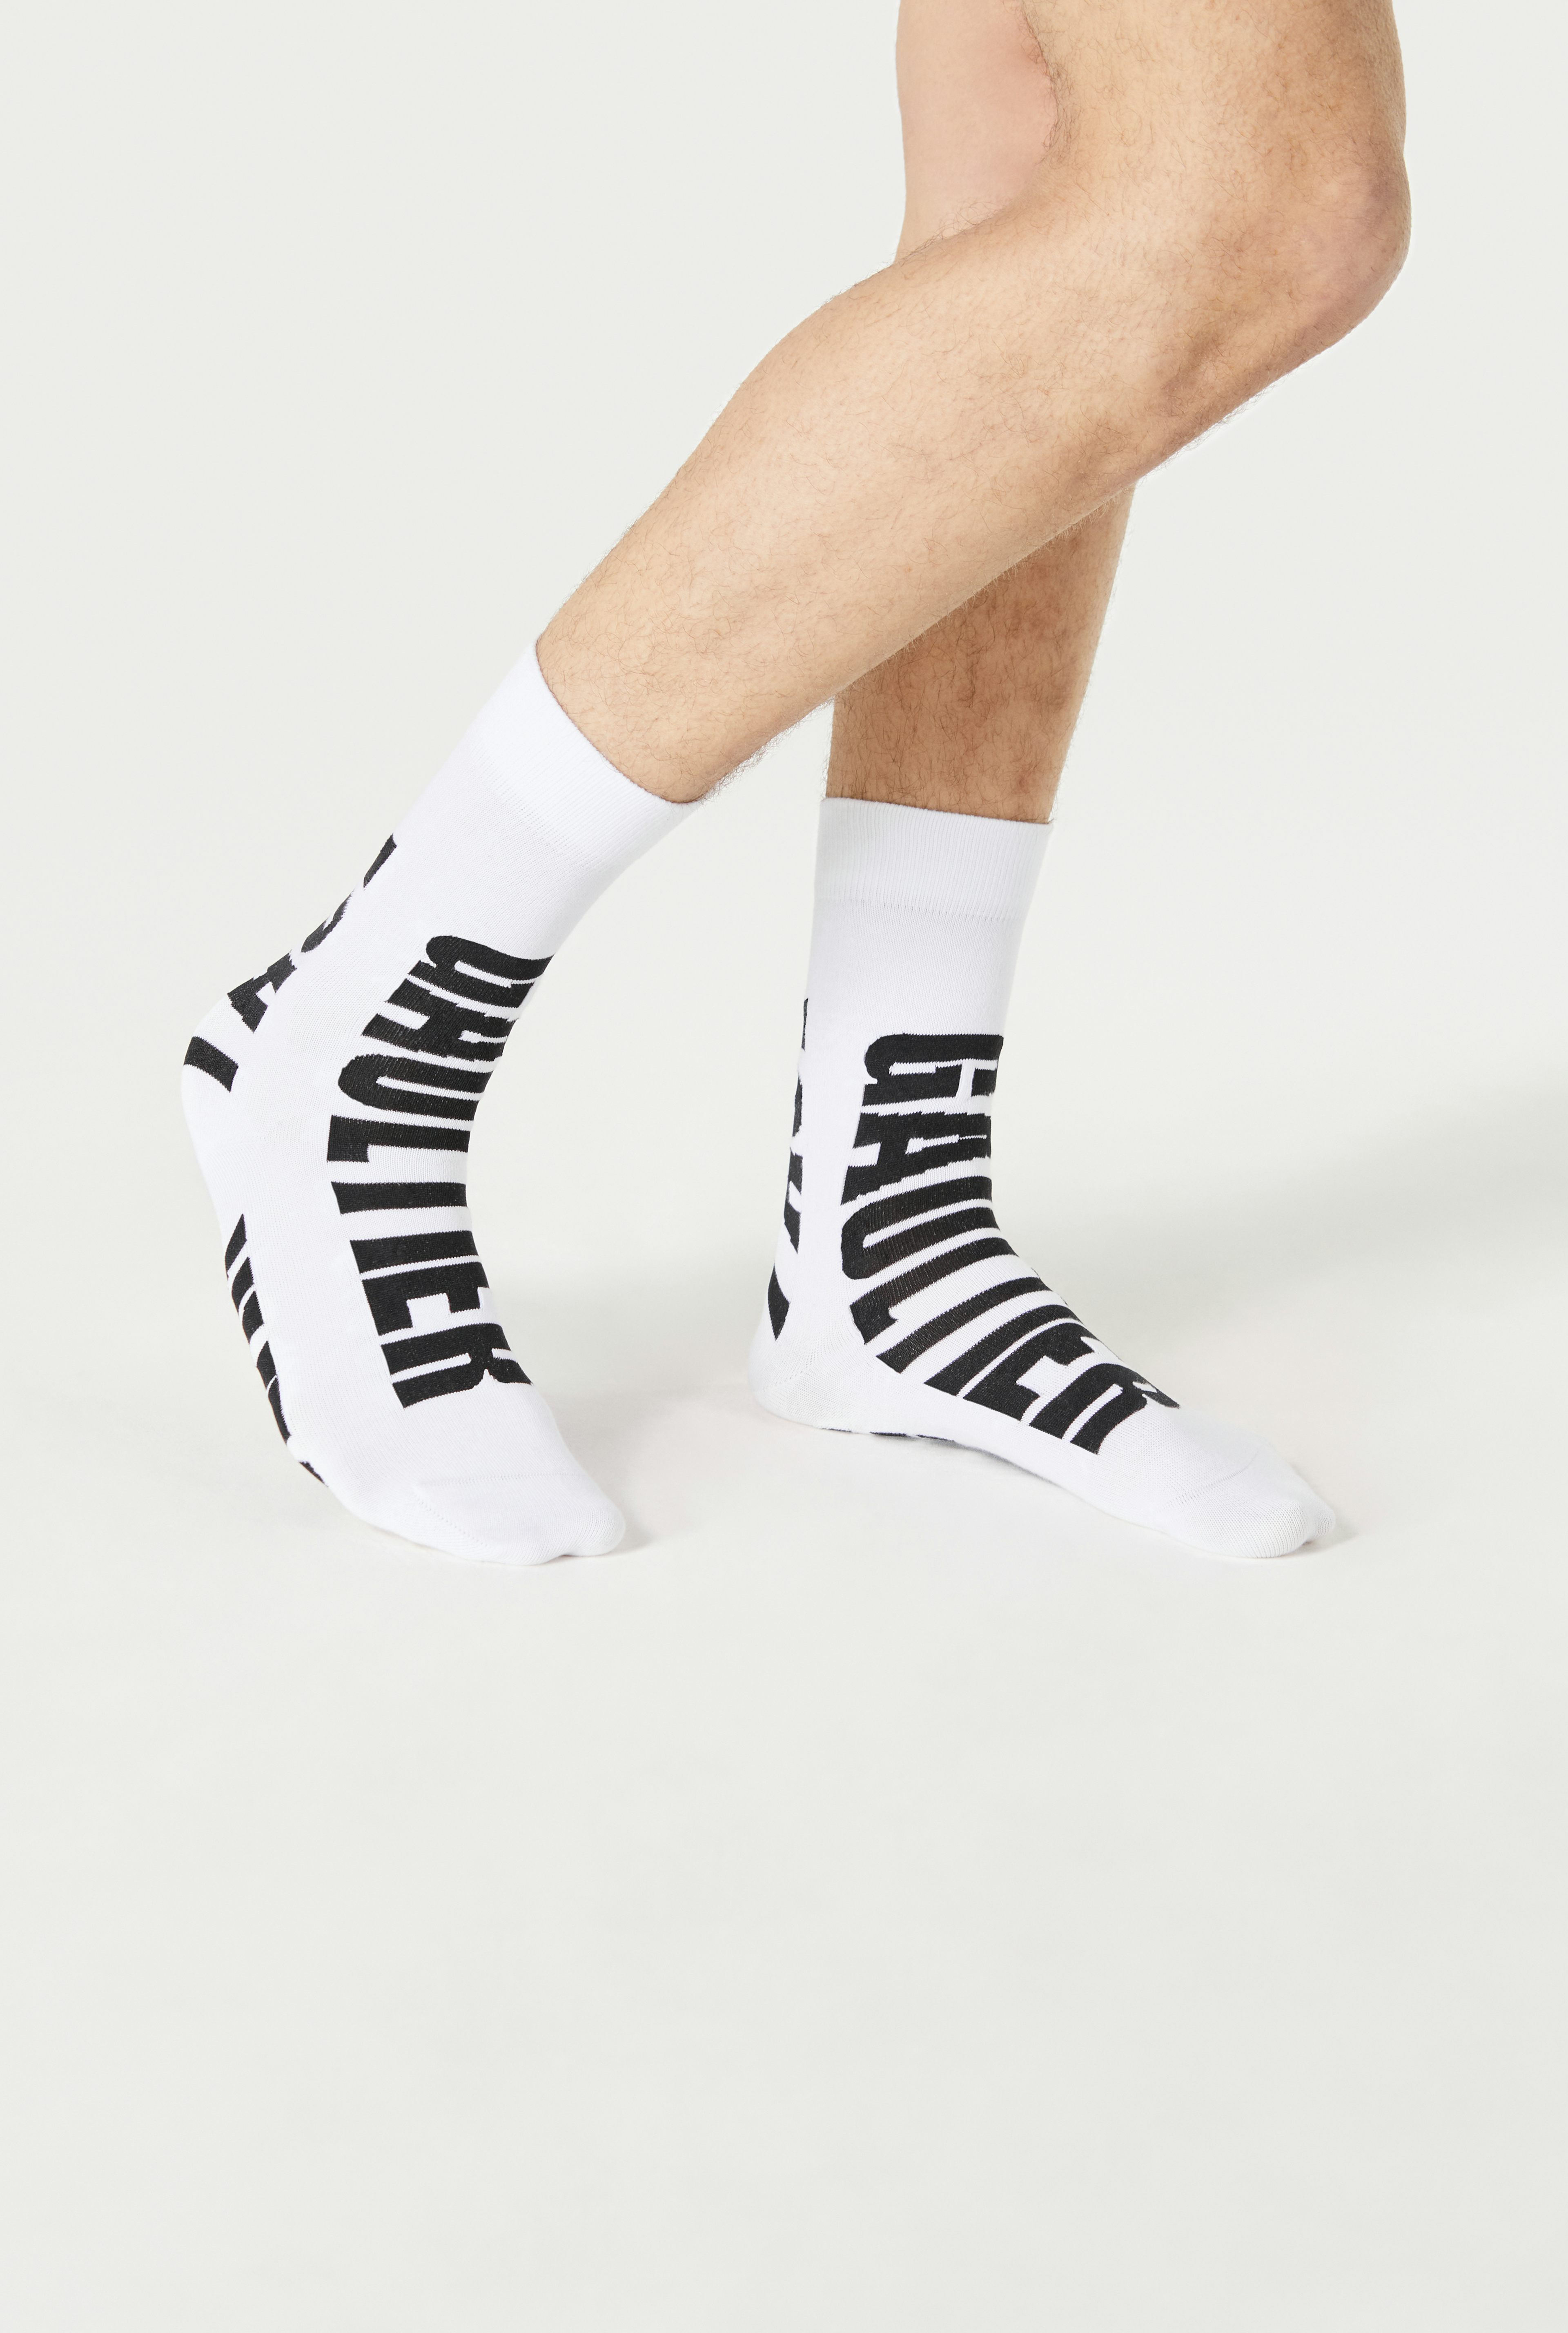 The Jean Paul Gaultier socks